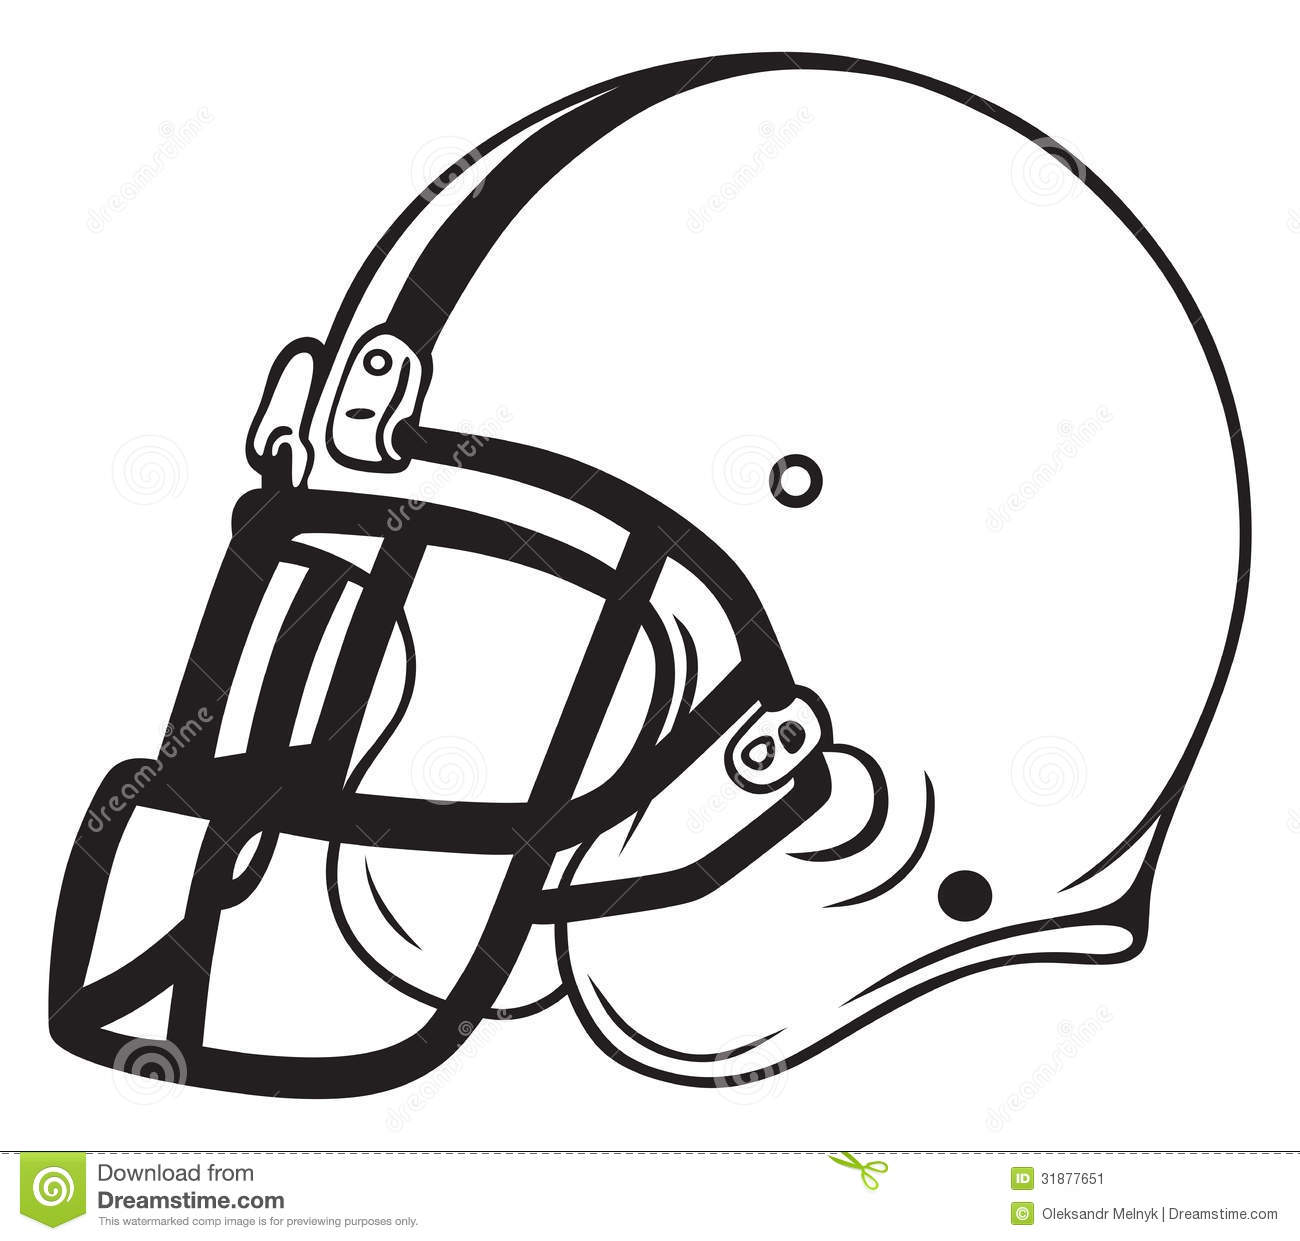 Helmet Football